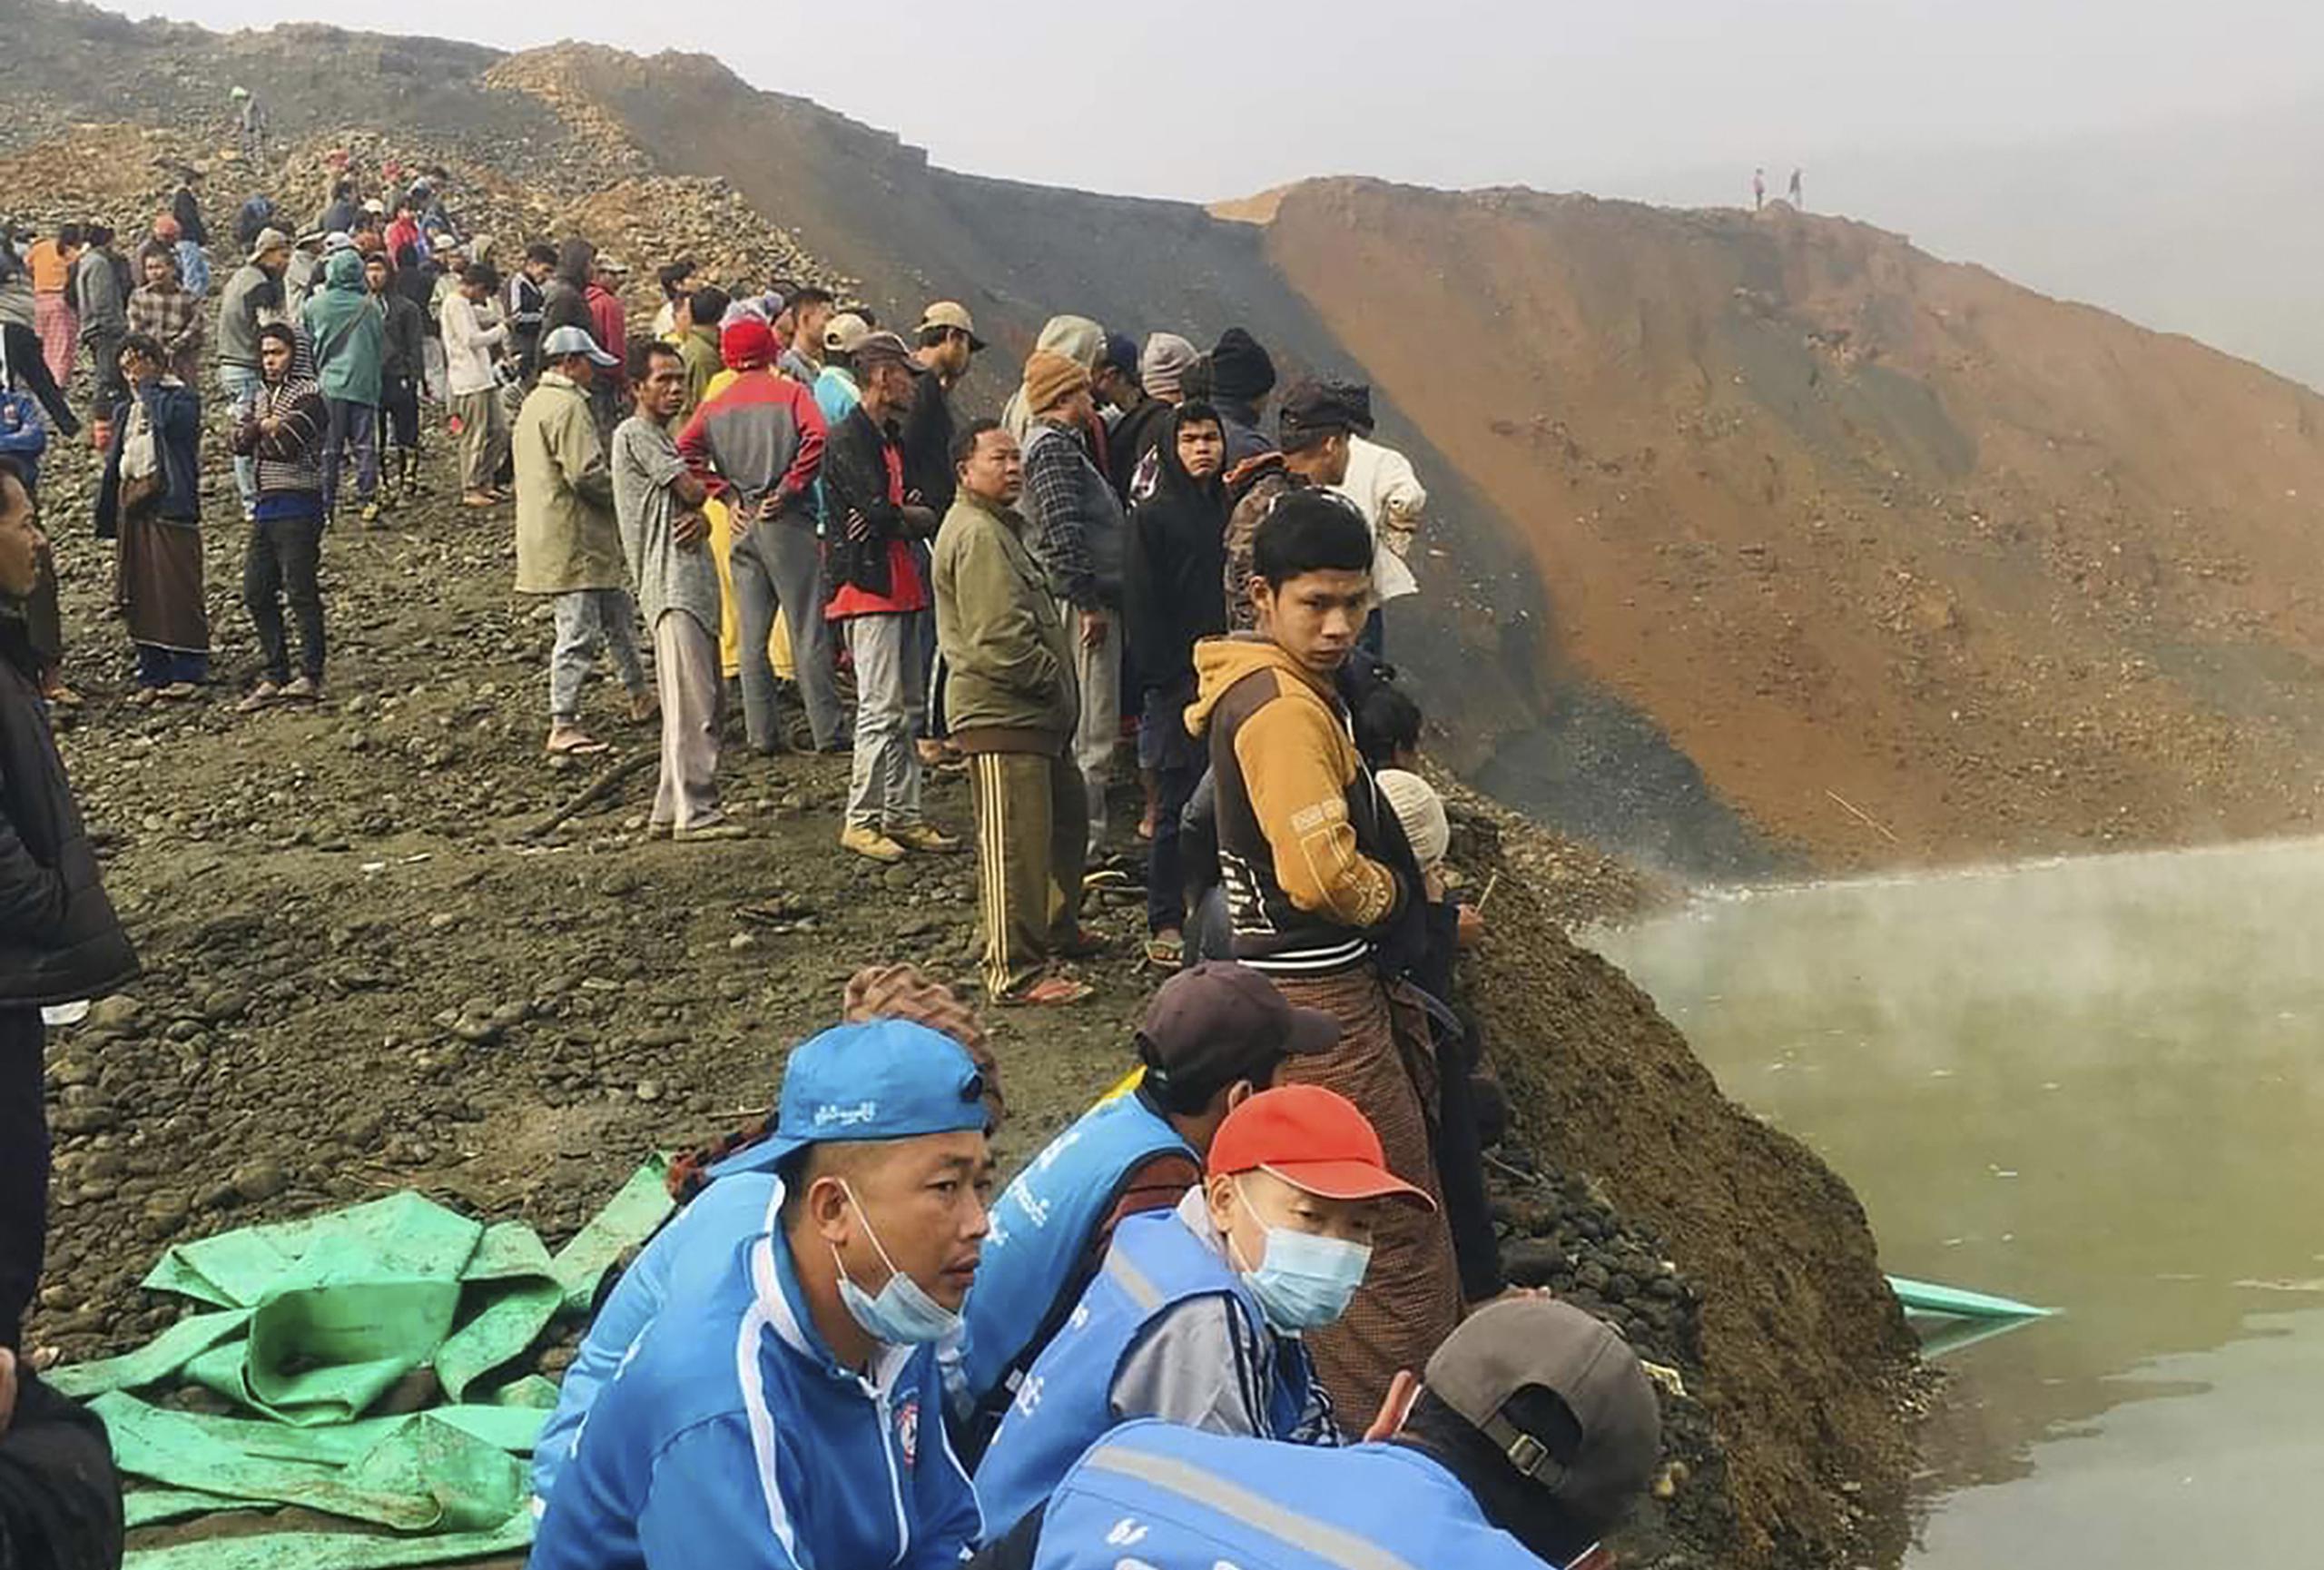 Más de 70 mineros que buscaban jade fueron arrastrados hasta un lago unas horas antes del amanecer, cuando se produjo el deslave. (AP Photo)